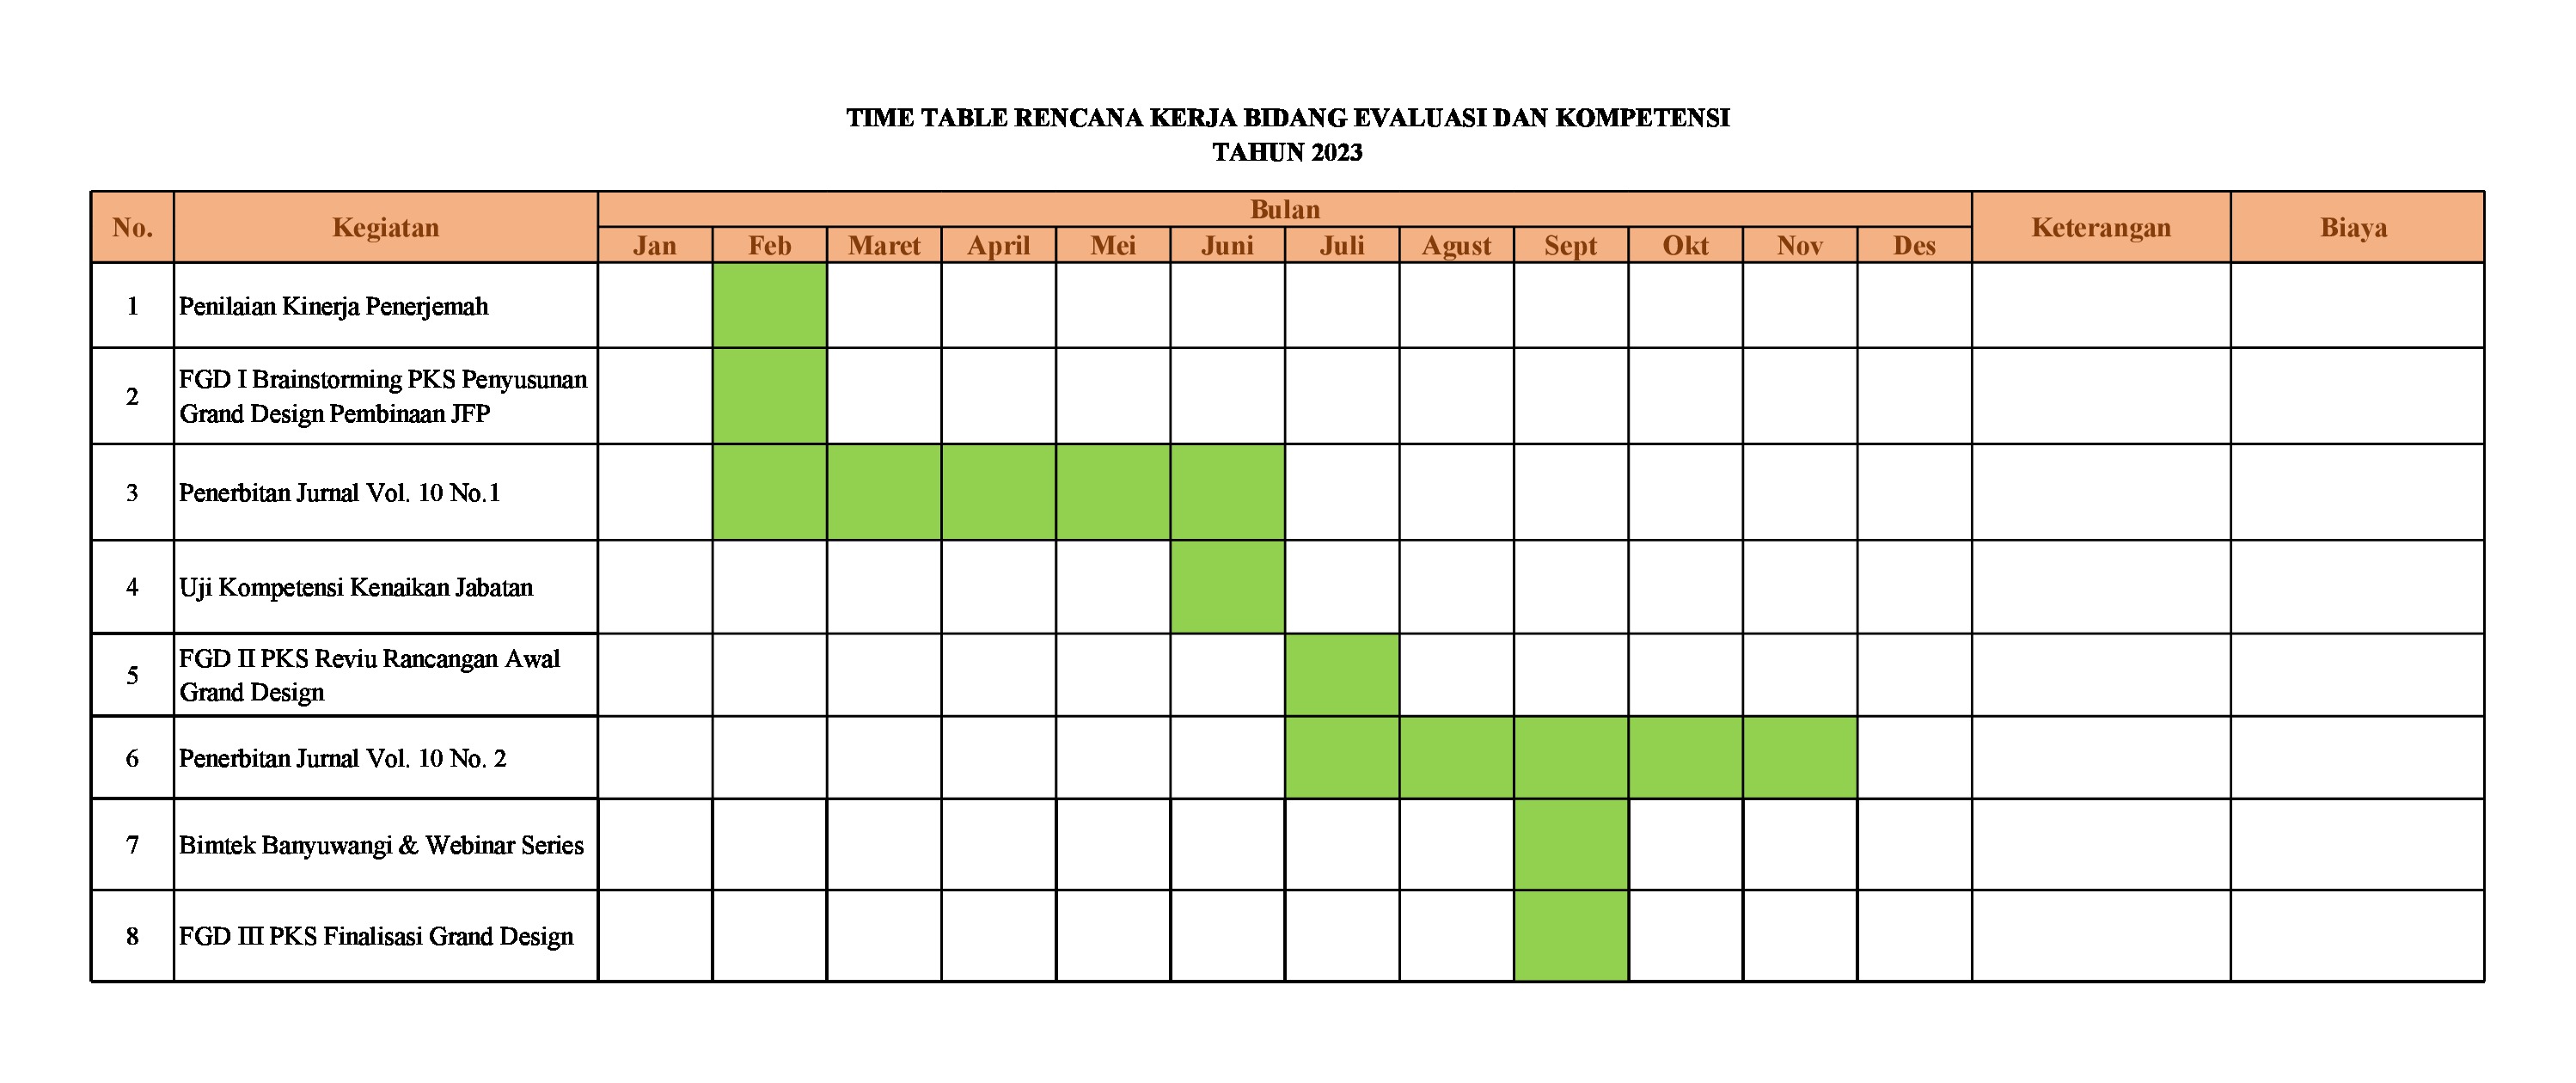 Time Table Rencana Kerja Bidang Evaluasi dan Kompetensi Tahun 2023